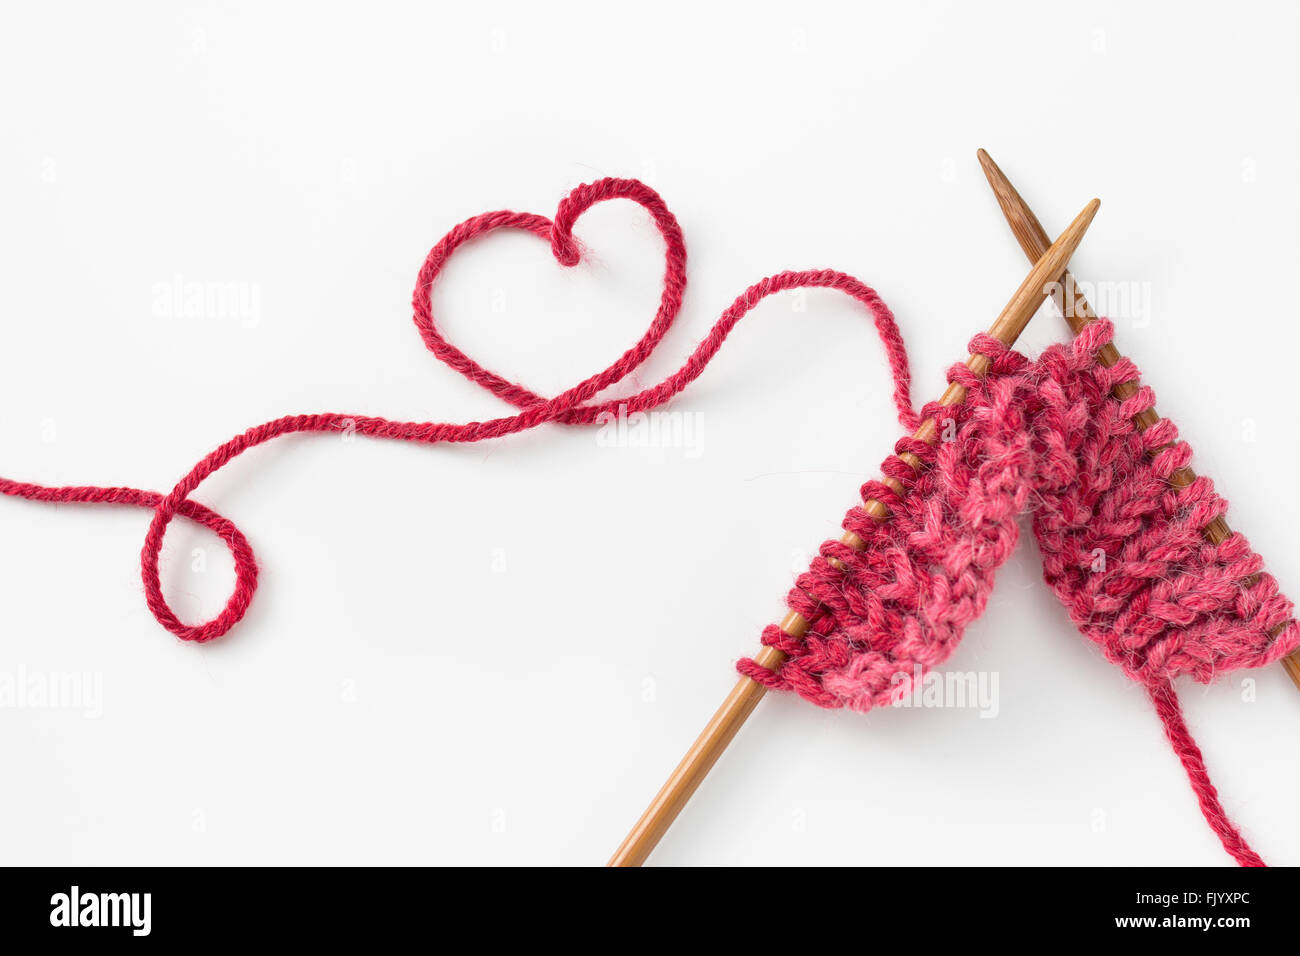 Proyecto de tejer incompleta con hilados de lana en forma de corazón Foto de stock